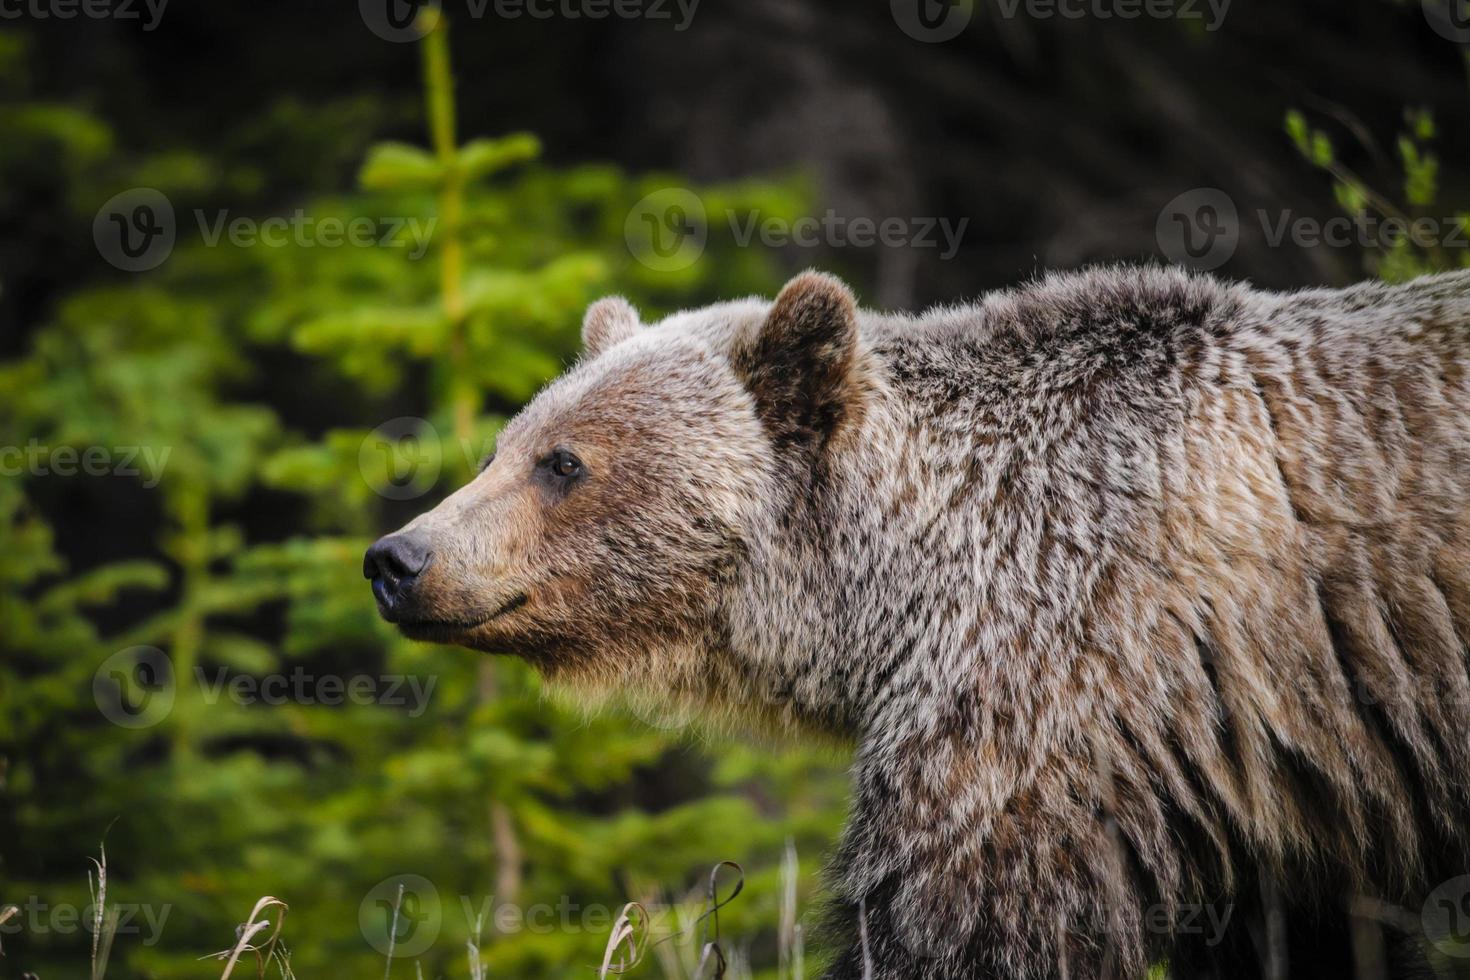 Grizzlybär (ursus arctos horribilis) foto